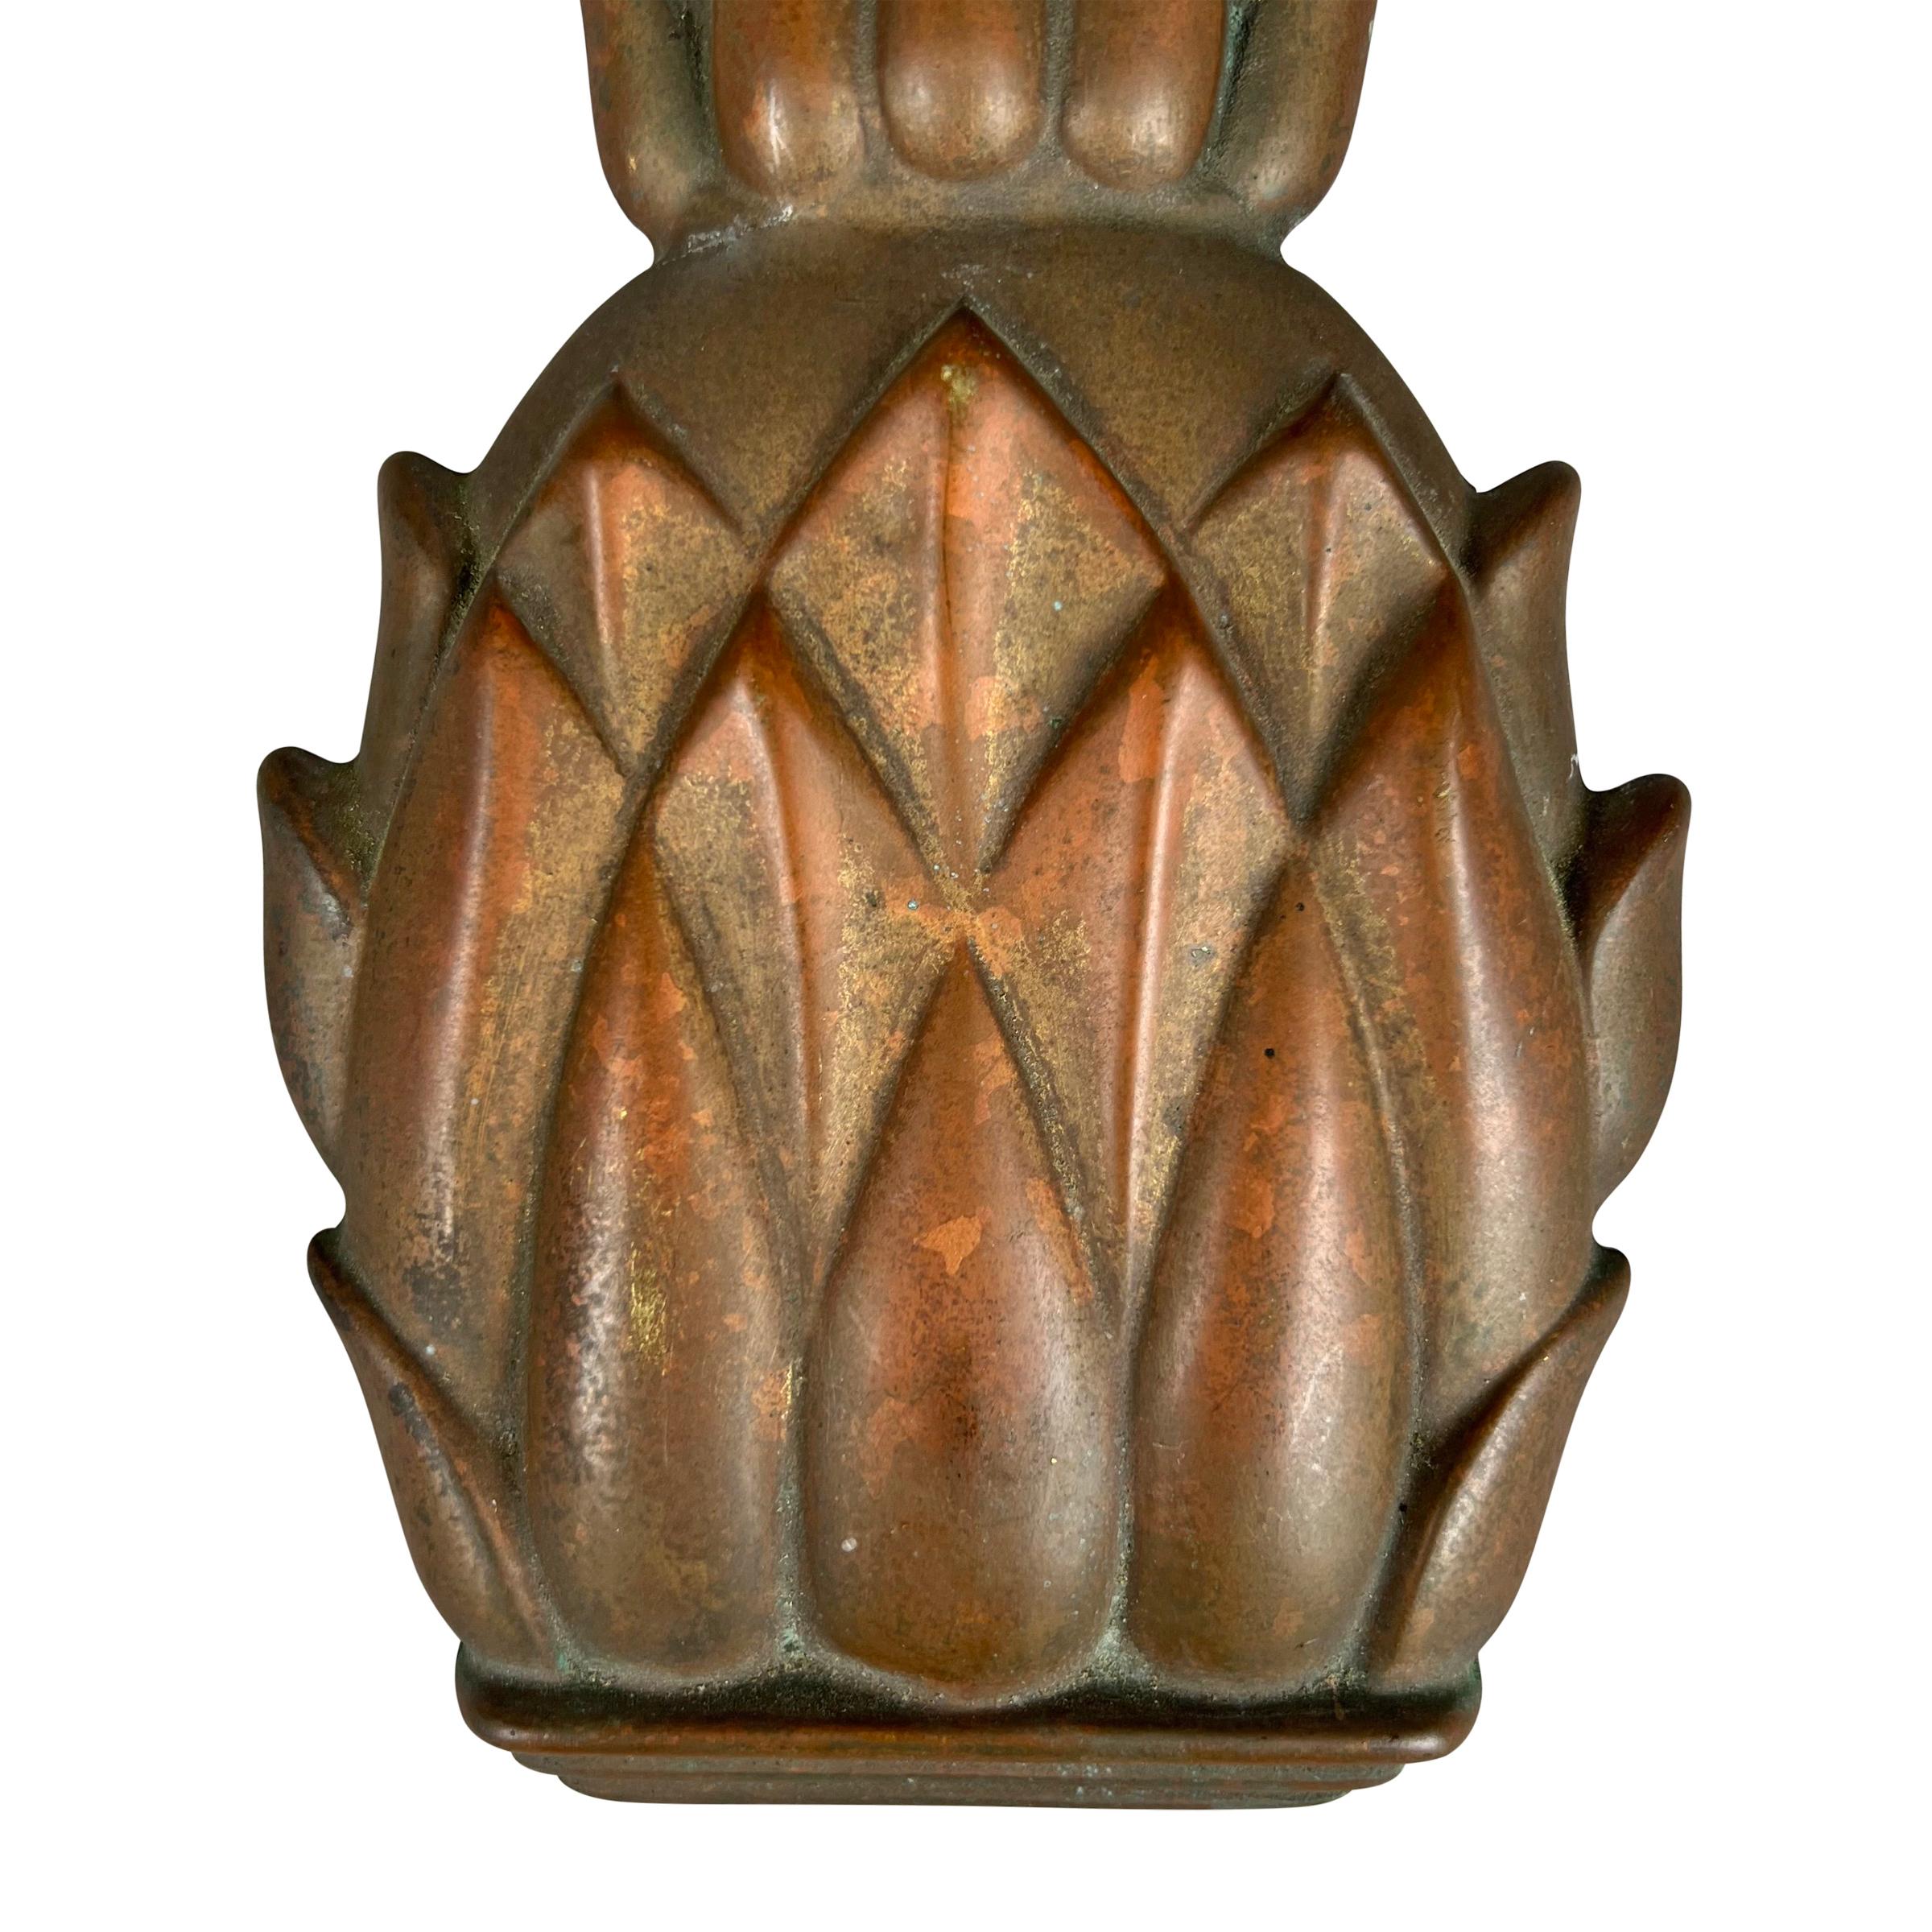 pineapple door knocker meaning